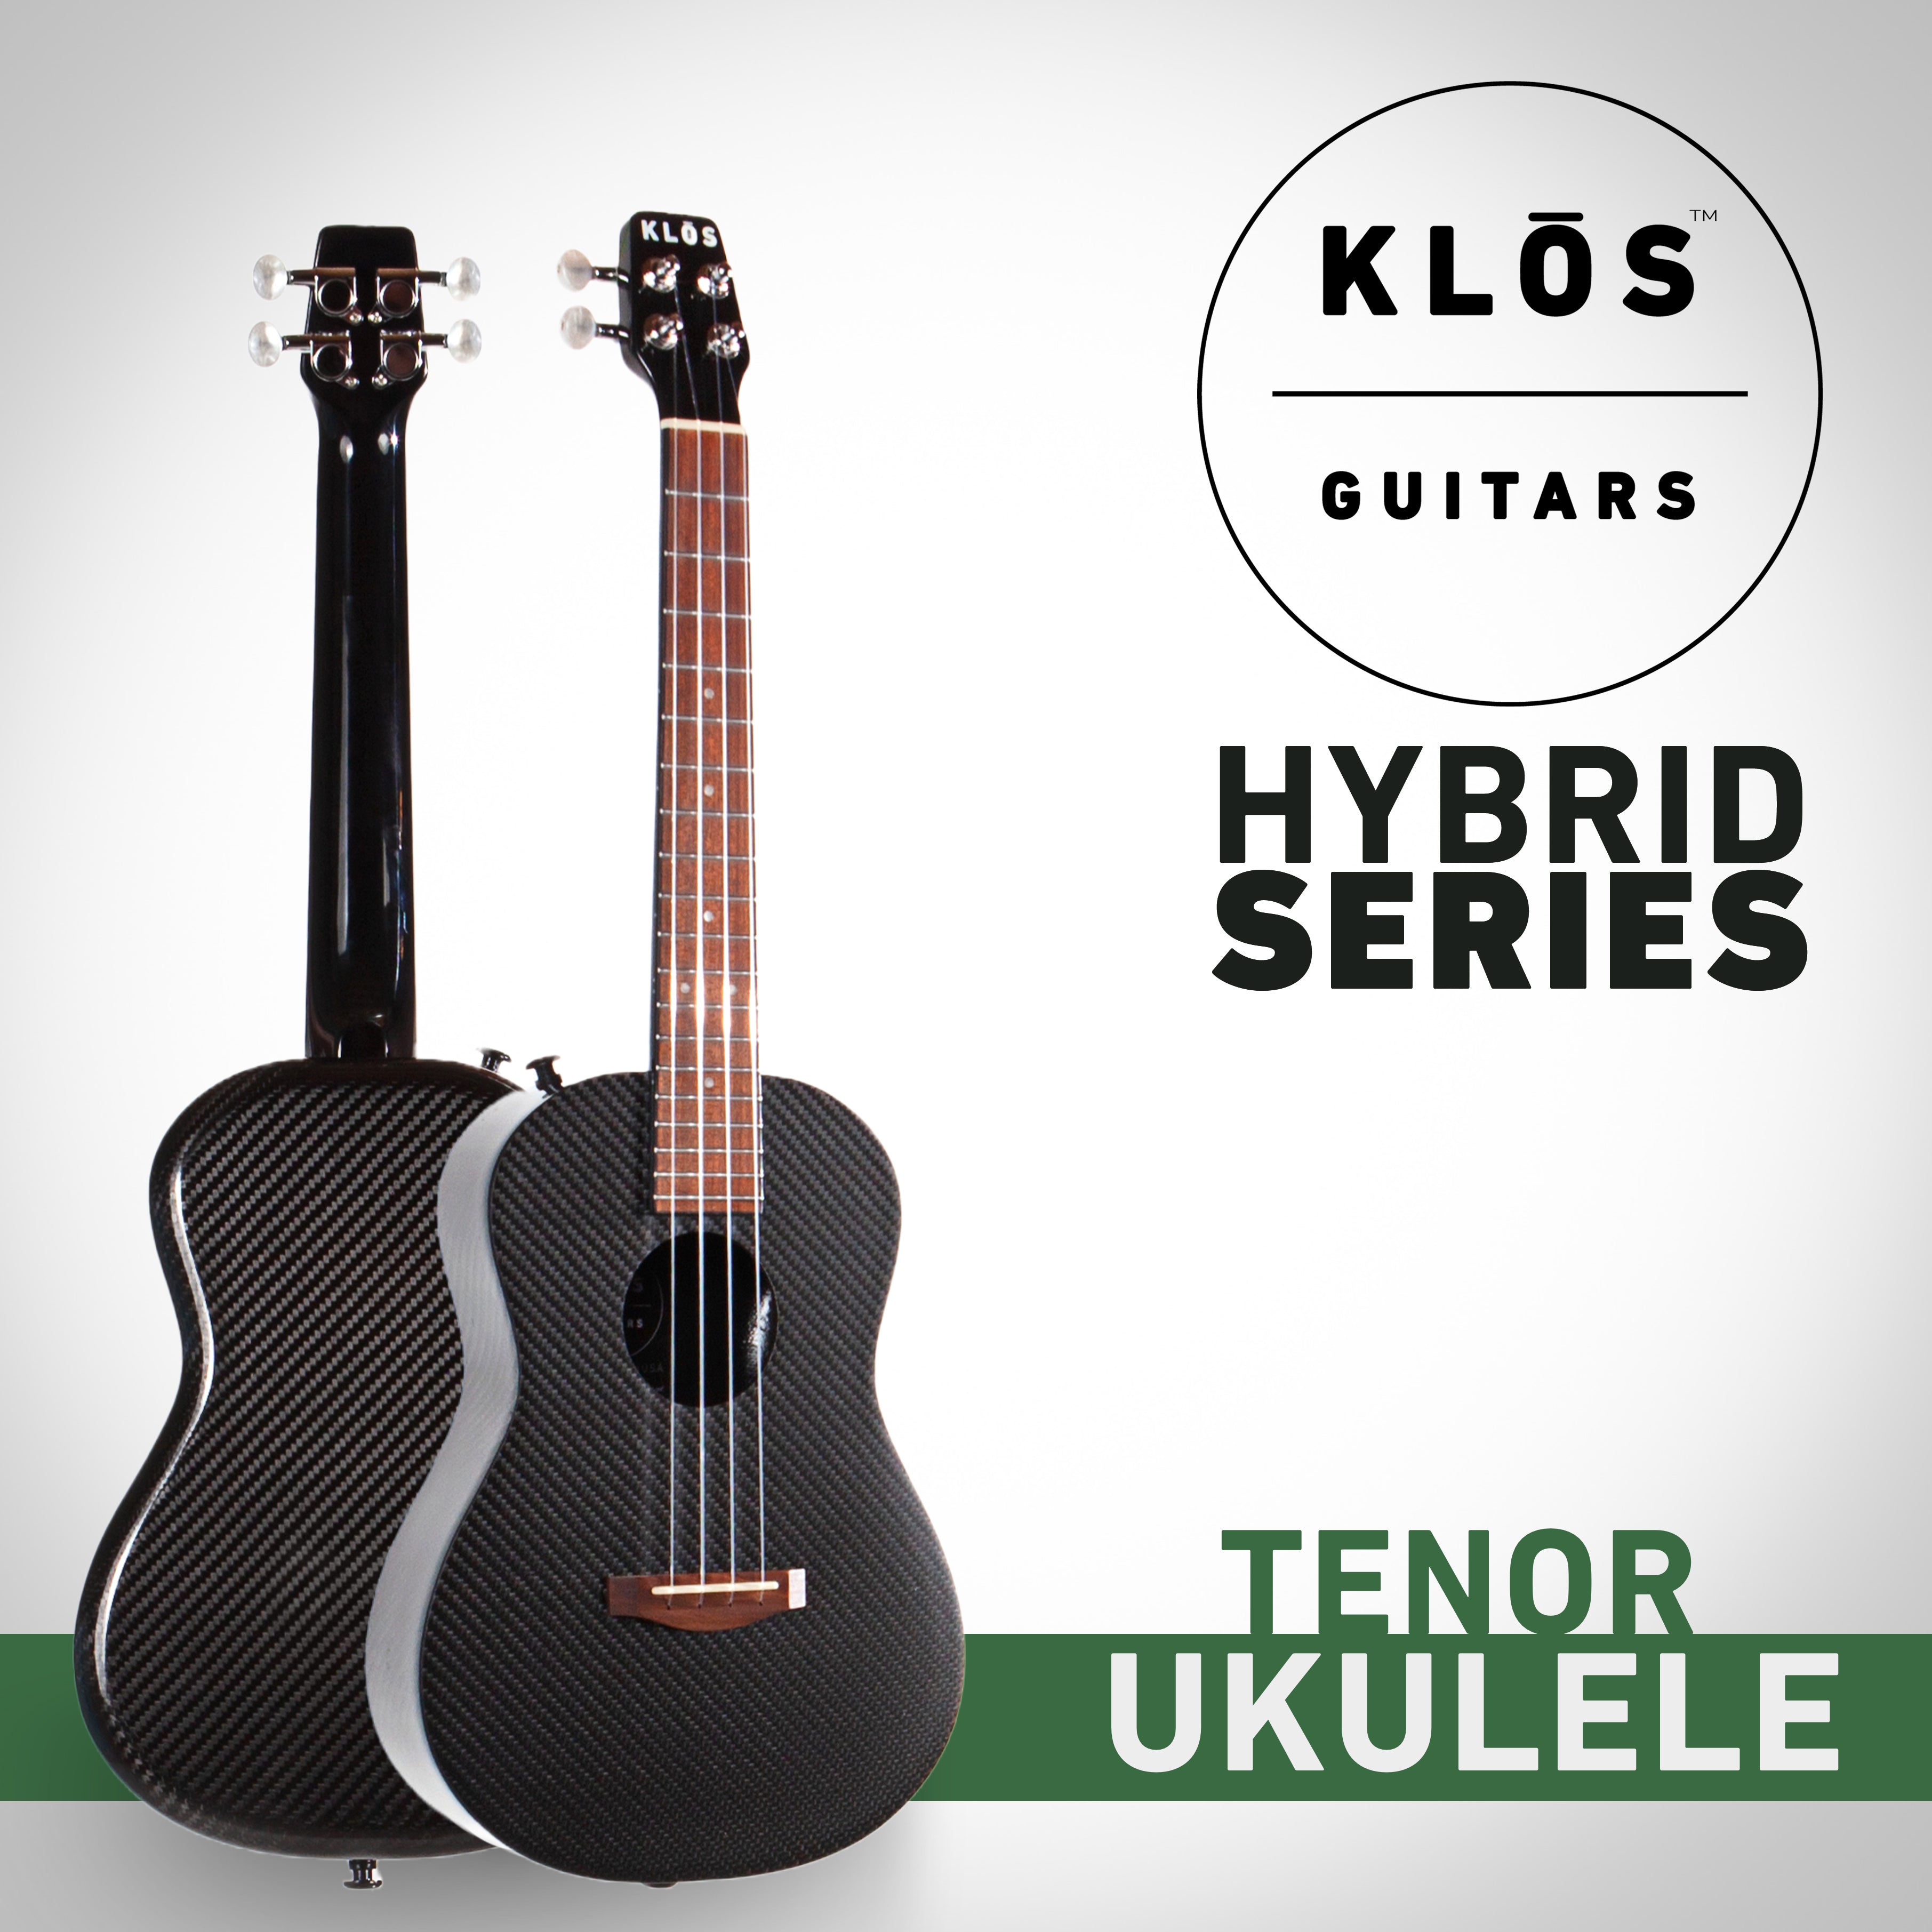 Concert Ukulele, Polished Nickel - Republic Guitars